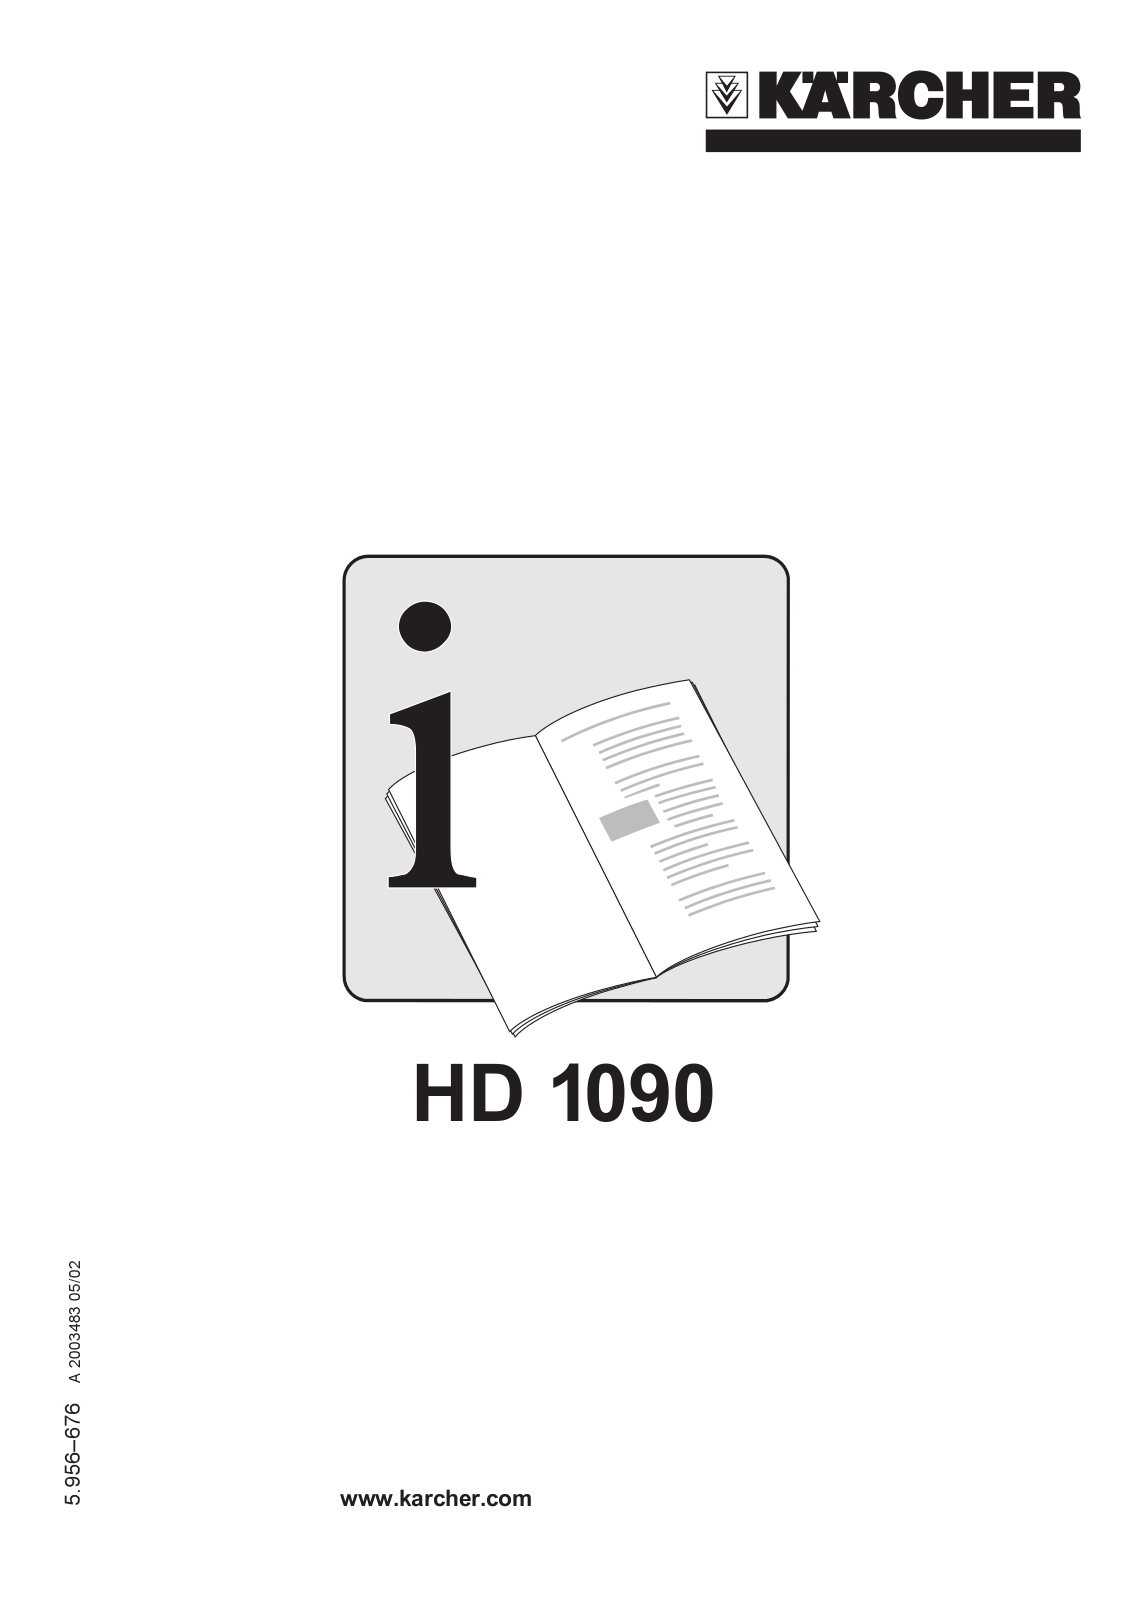 Karcher HD 1090 Manual